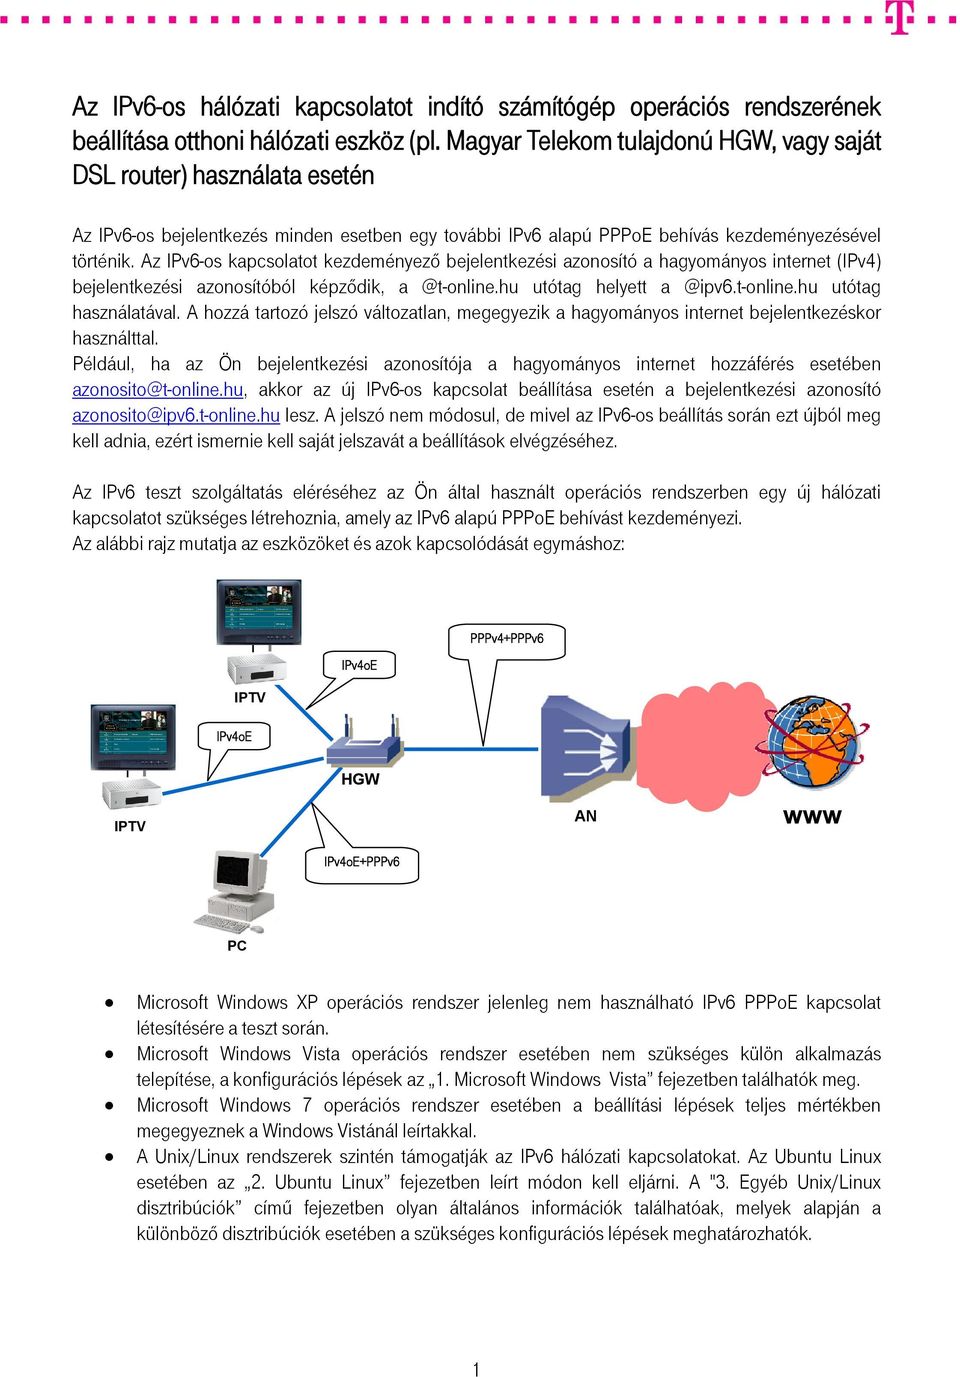 Az IPv6-os kapcsolatot kezdeményező bejelentkezési azonosító a hagyományos internet (IPv4) bejelentkezési azonosítóból képződik, a @t-online.hu utótag helyett a @ipv6.t-online.hu utótag használatával.